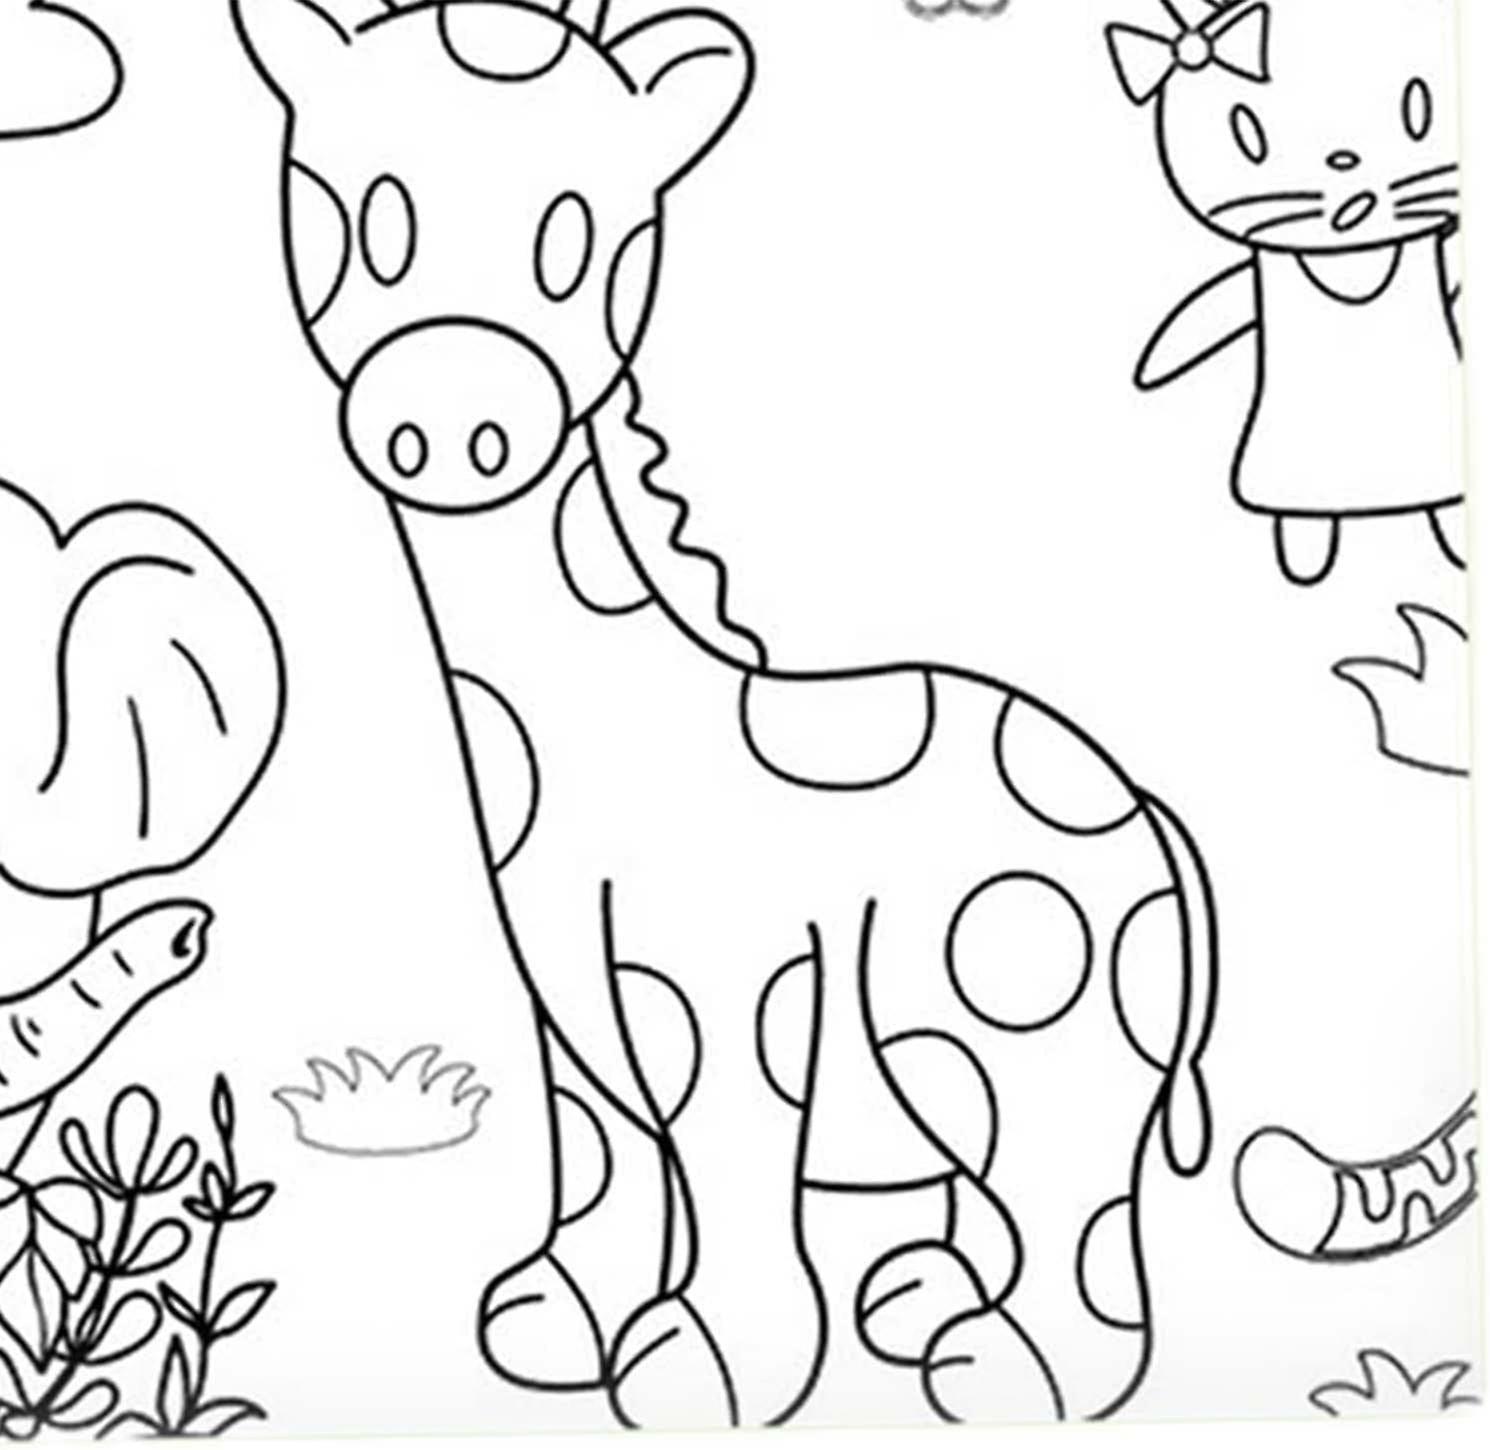 Coloring paper roll wall coloring sheets coloring books drawing paper roll coloring poster for children animal kingdom fruugo no